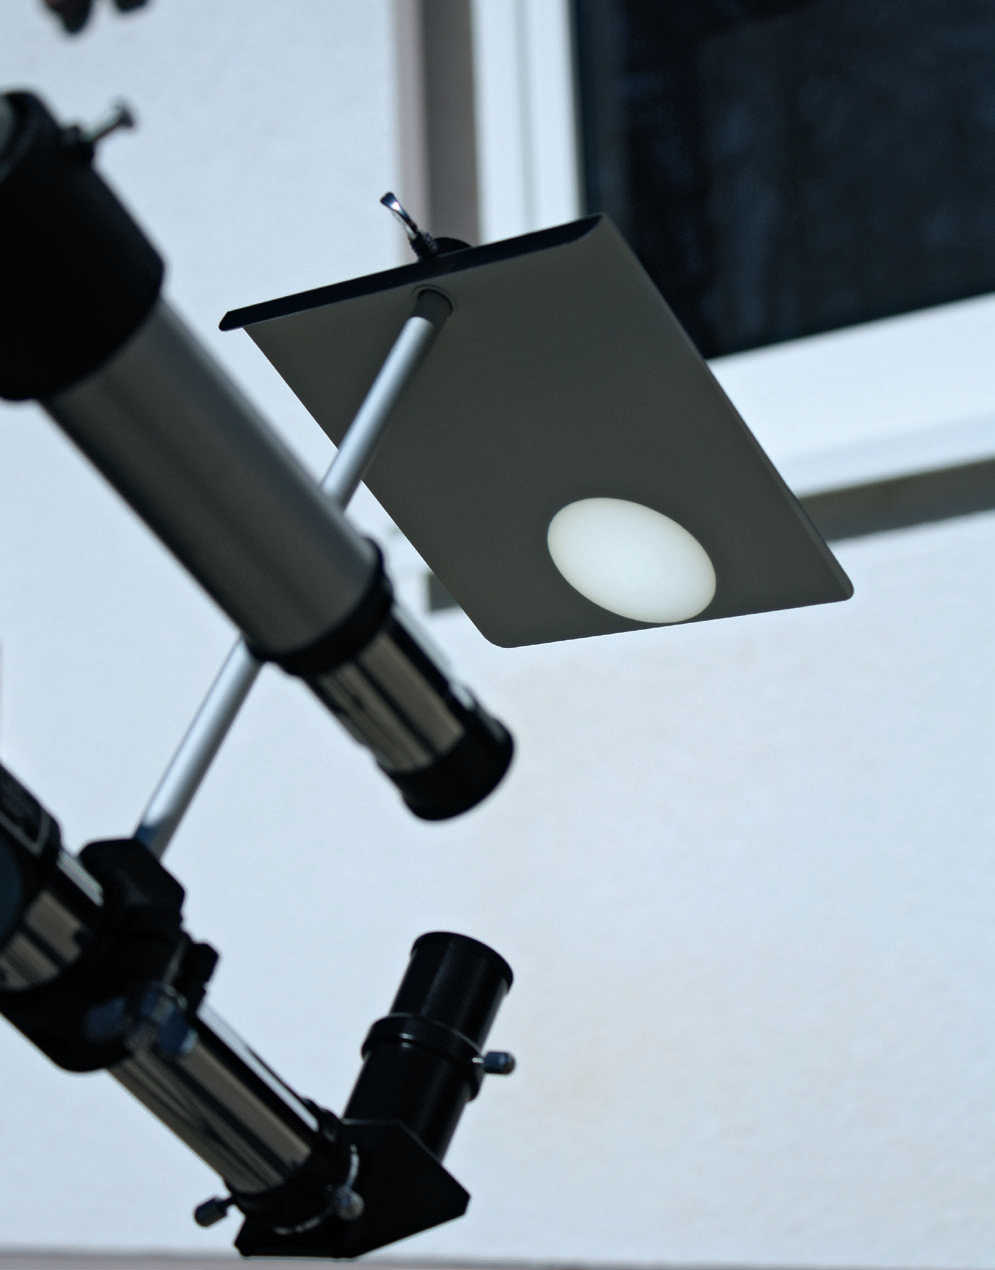 Ekran projekcyjny zamocowany na wyciągu okularowym to bezpieczny metoda obserwacji tranzytu Merkurego. Heiko Mehring